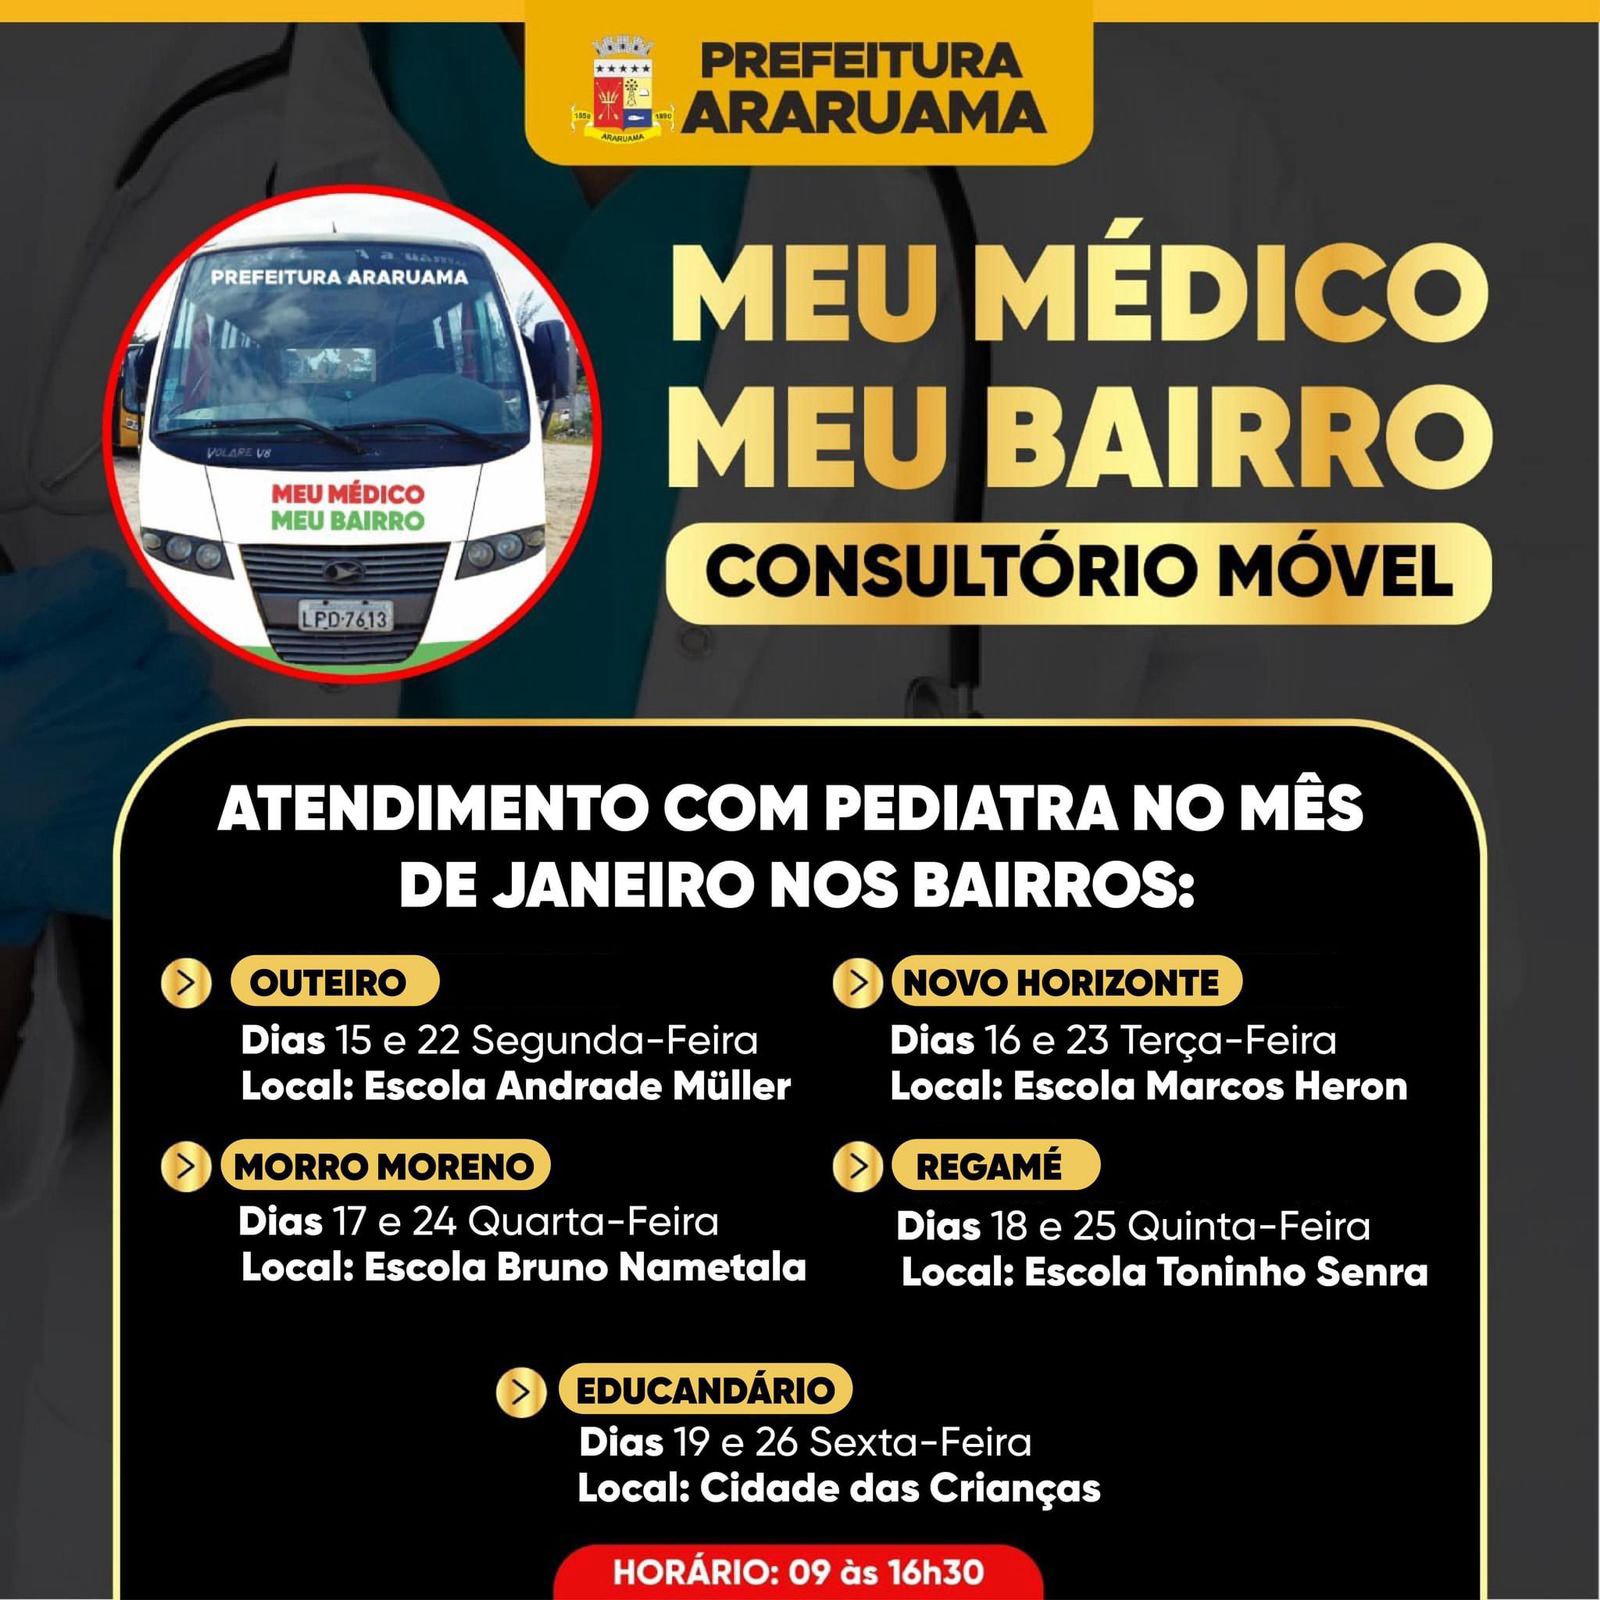 Programa “Meu Médico, Meu bairro” vai levar atendimento de pediatra a 5 bairros de Araruama nesse mês de janeiro